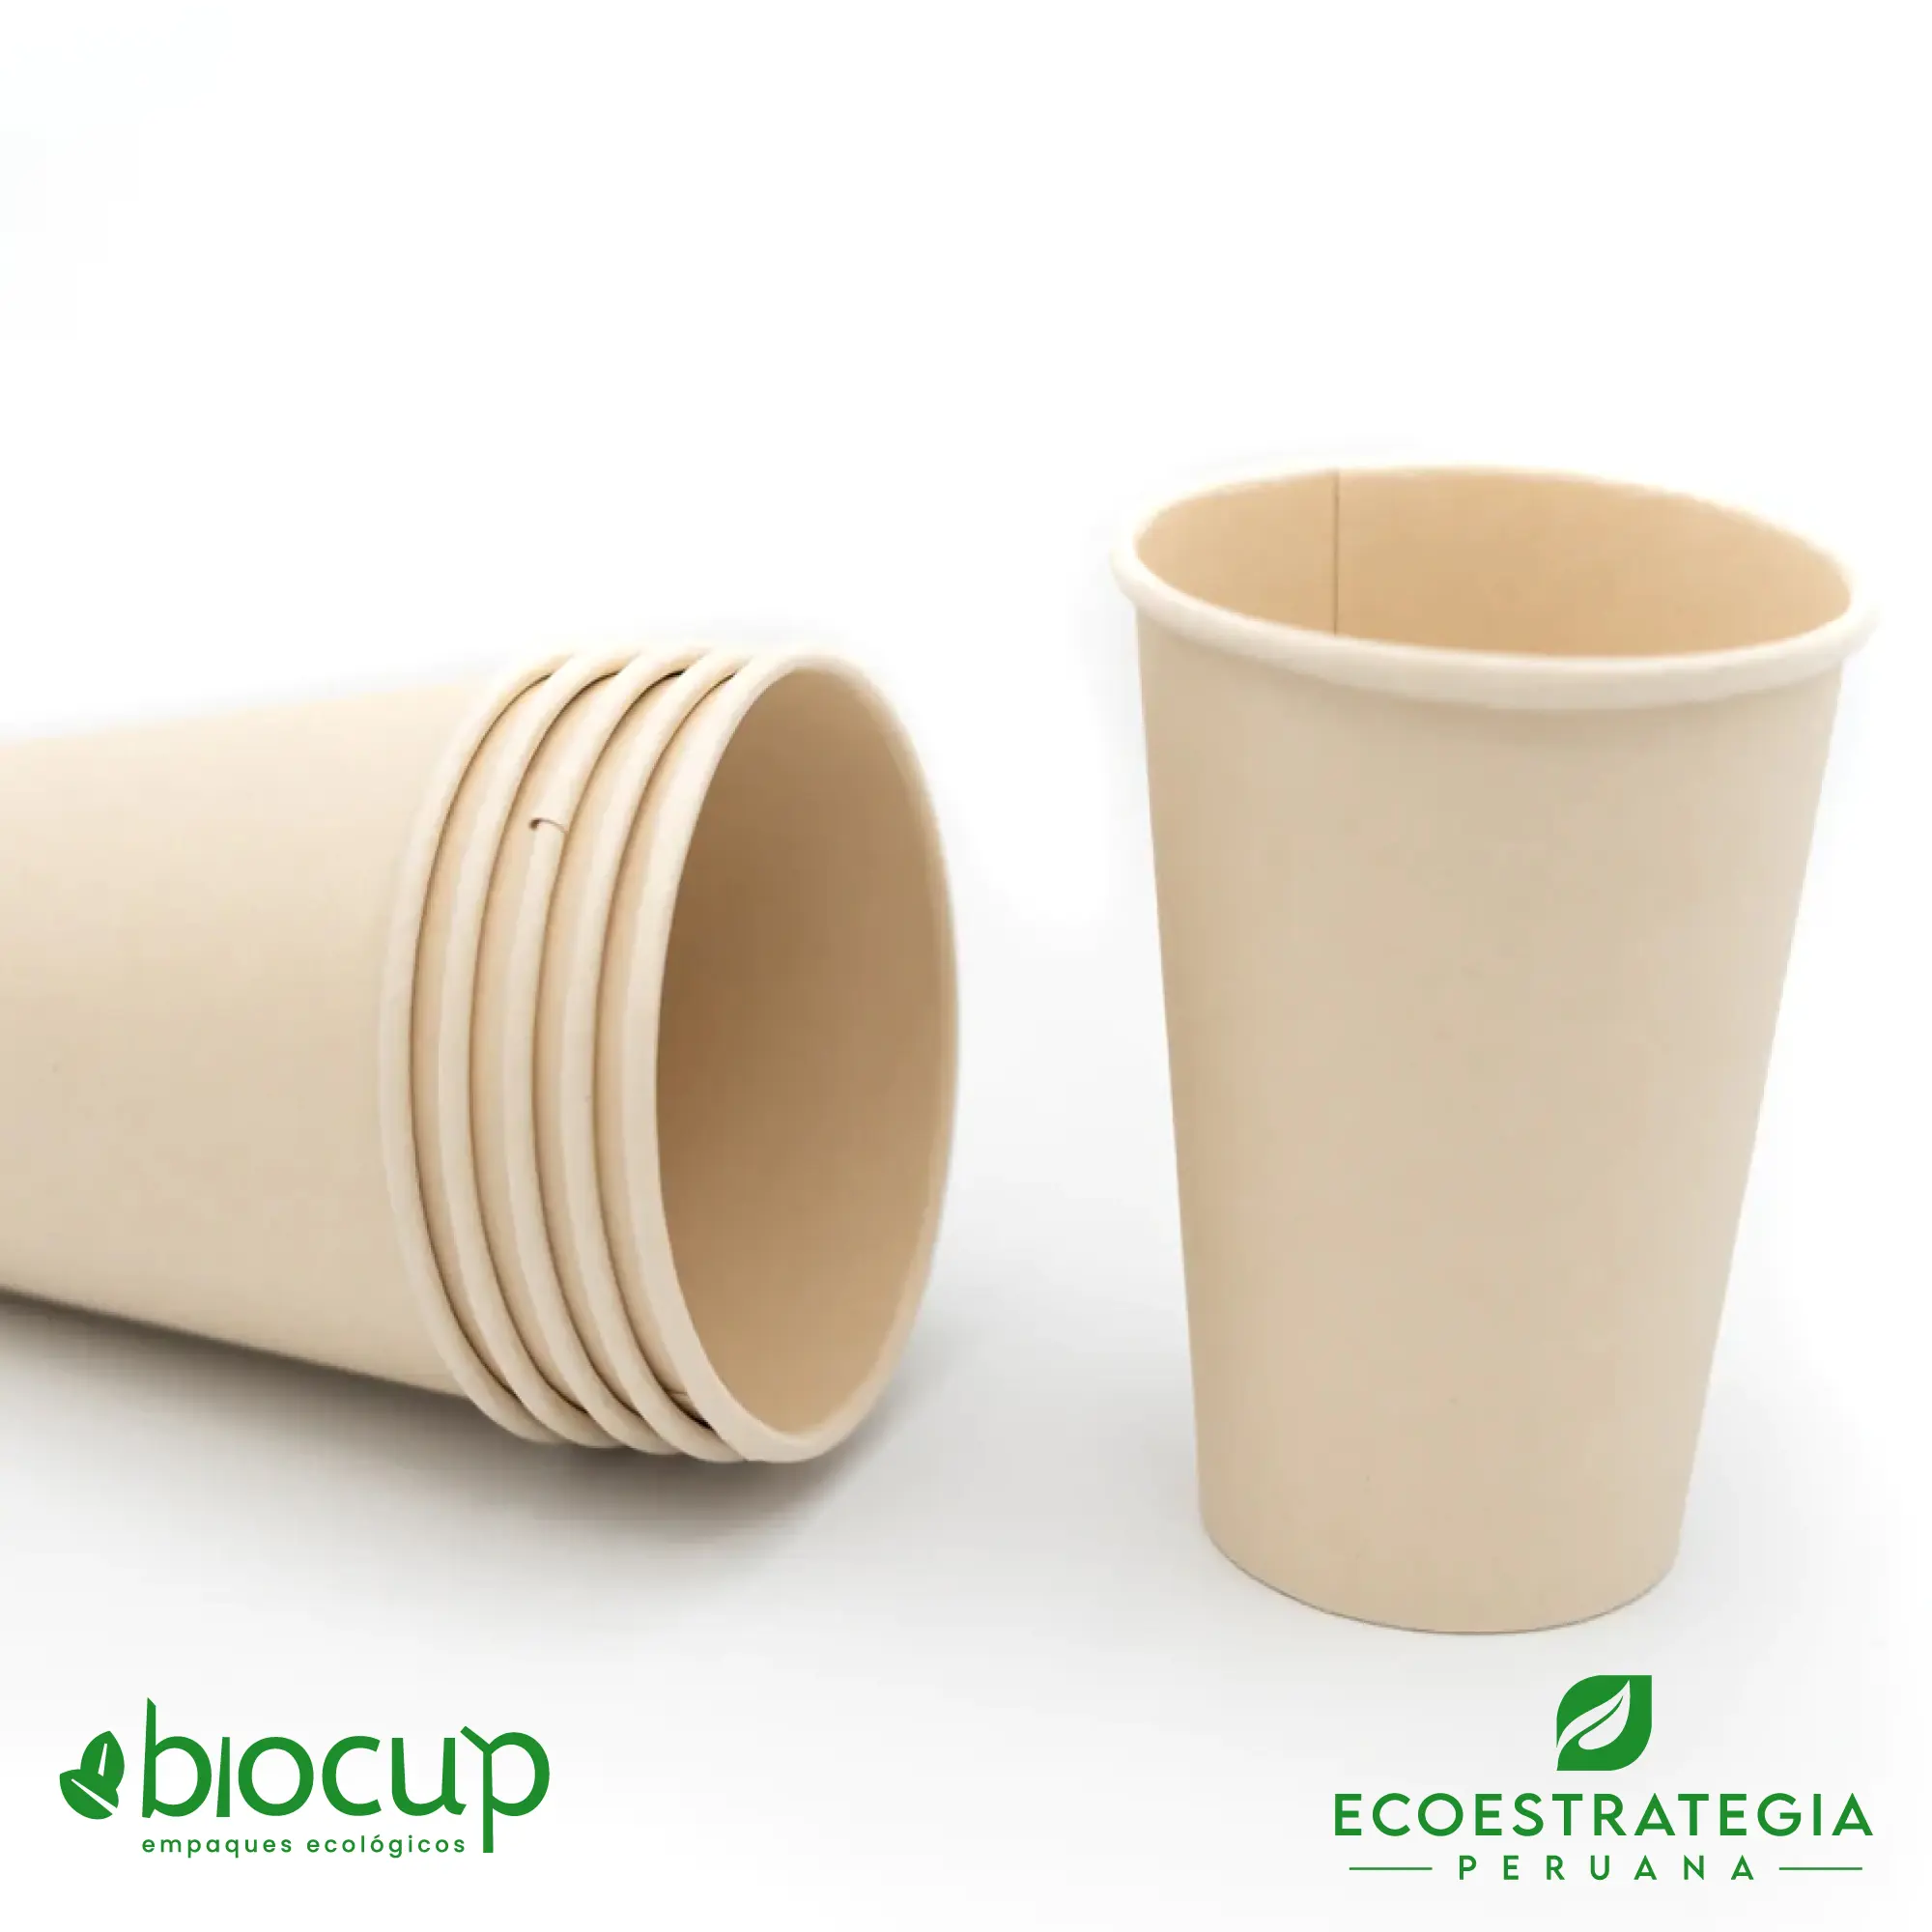 Este vaso de 14 oz es un producto de materiales biodegradables y compostables, hecho a base de fibra de bambú. Cotiza tus vasos para bebidas frias o calientes